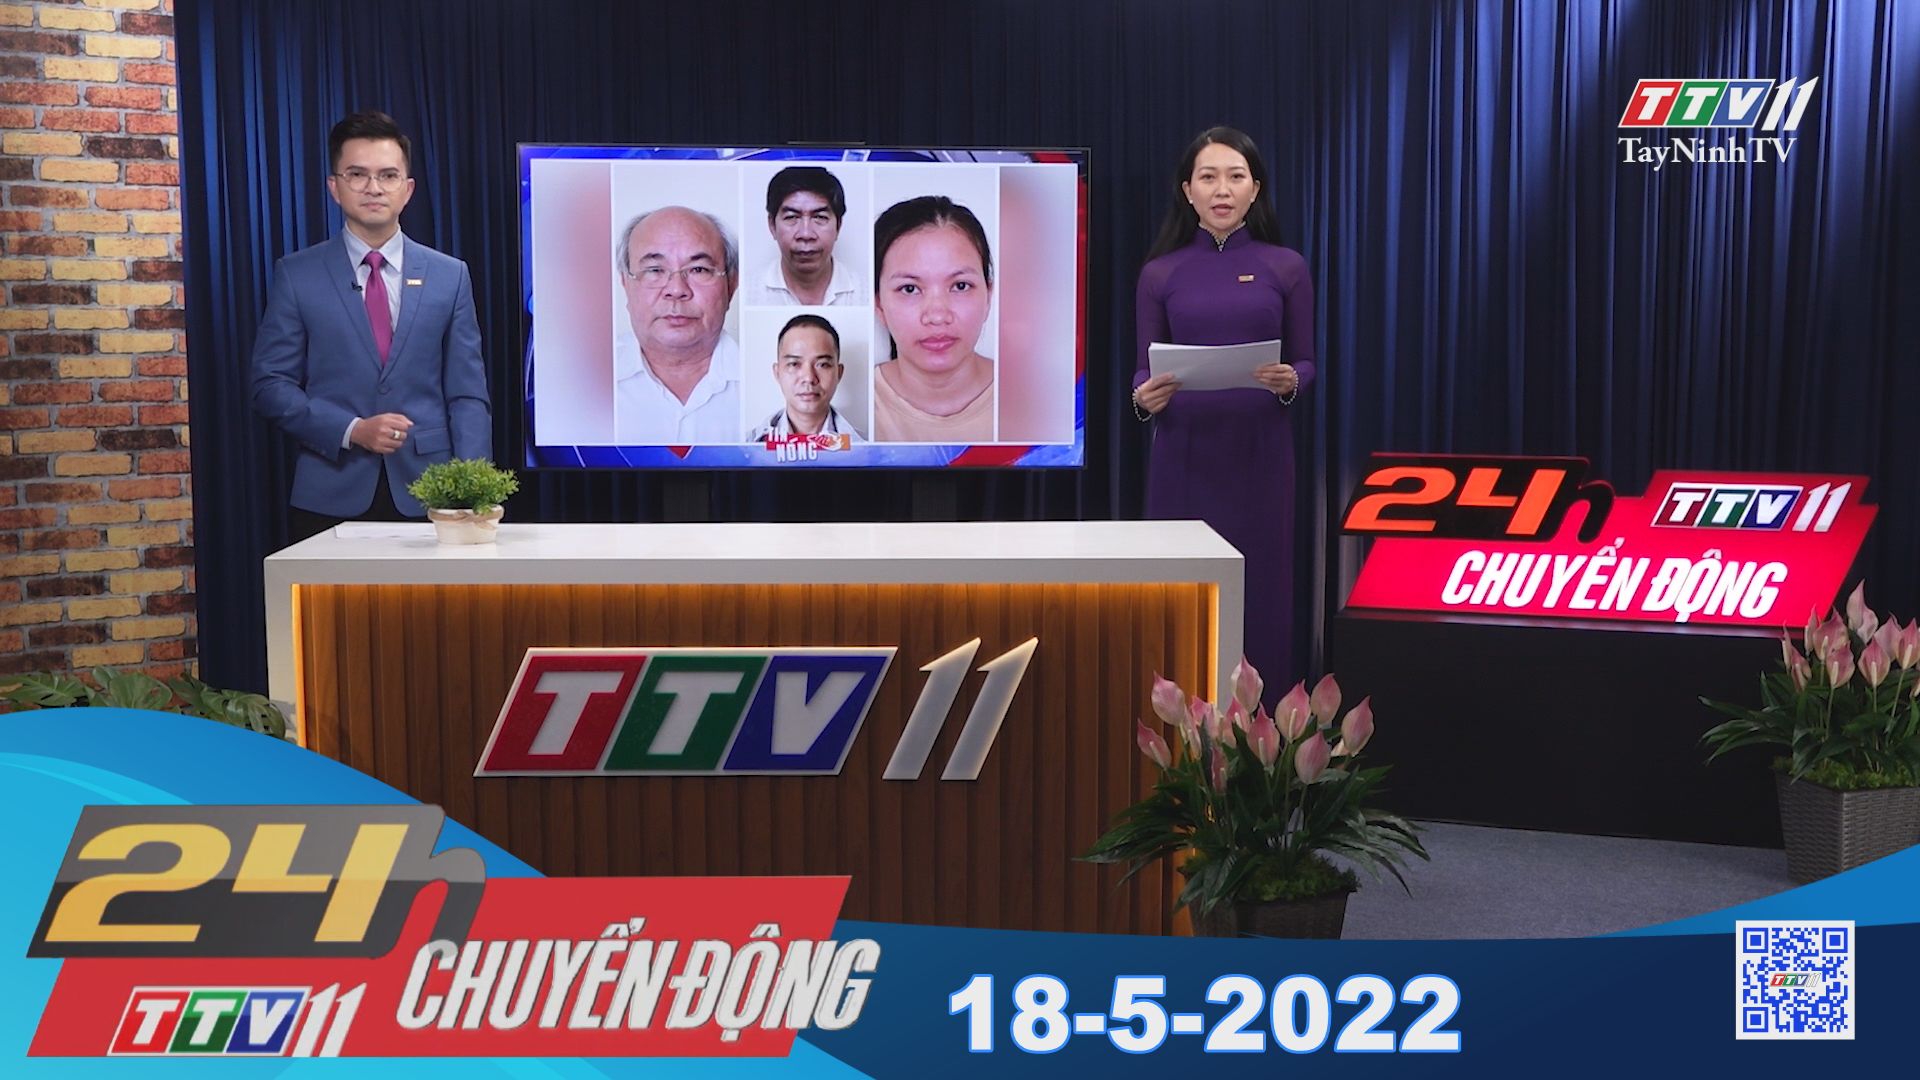 24h Chuyển động 18-5-2022 | Tin tức hôm nay | TayNinhTV